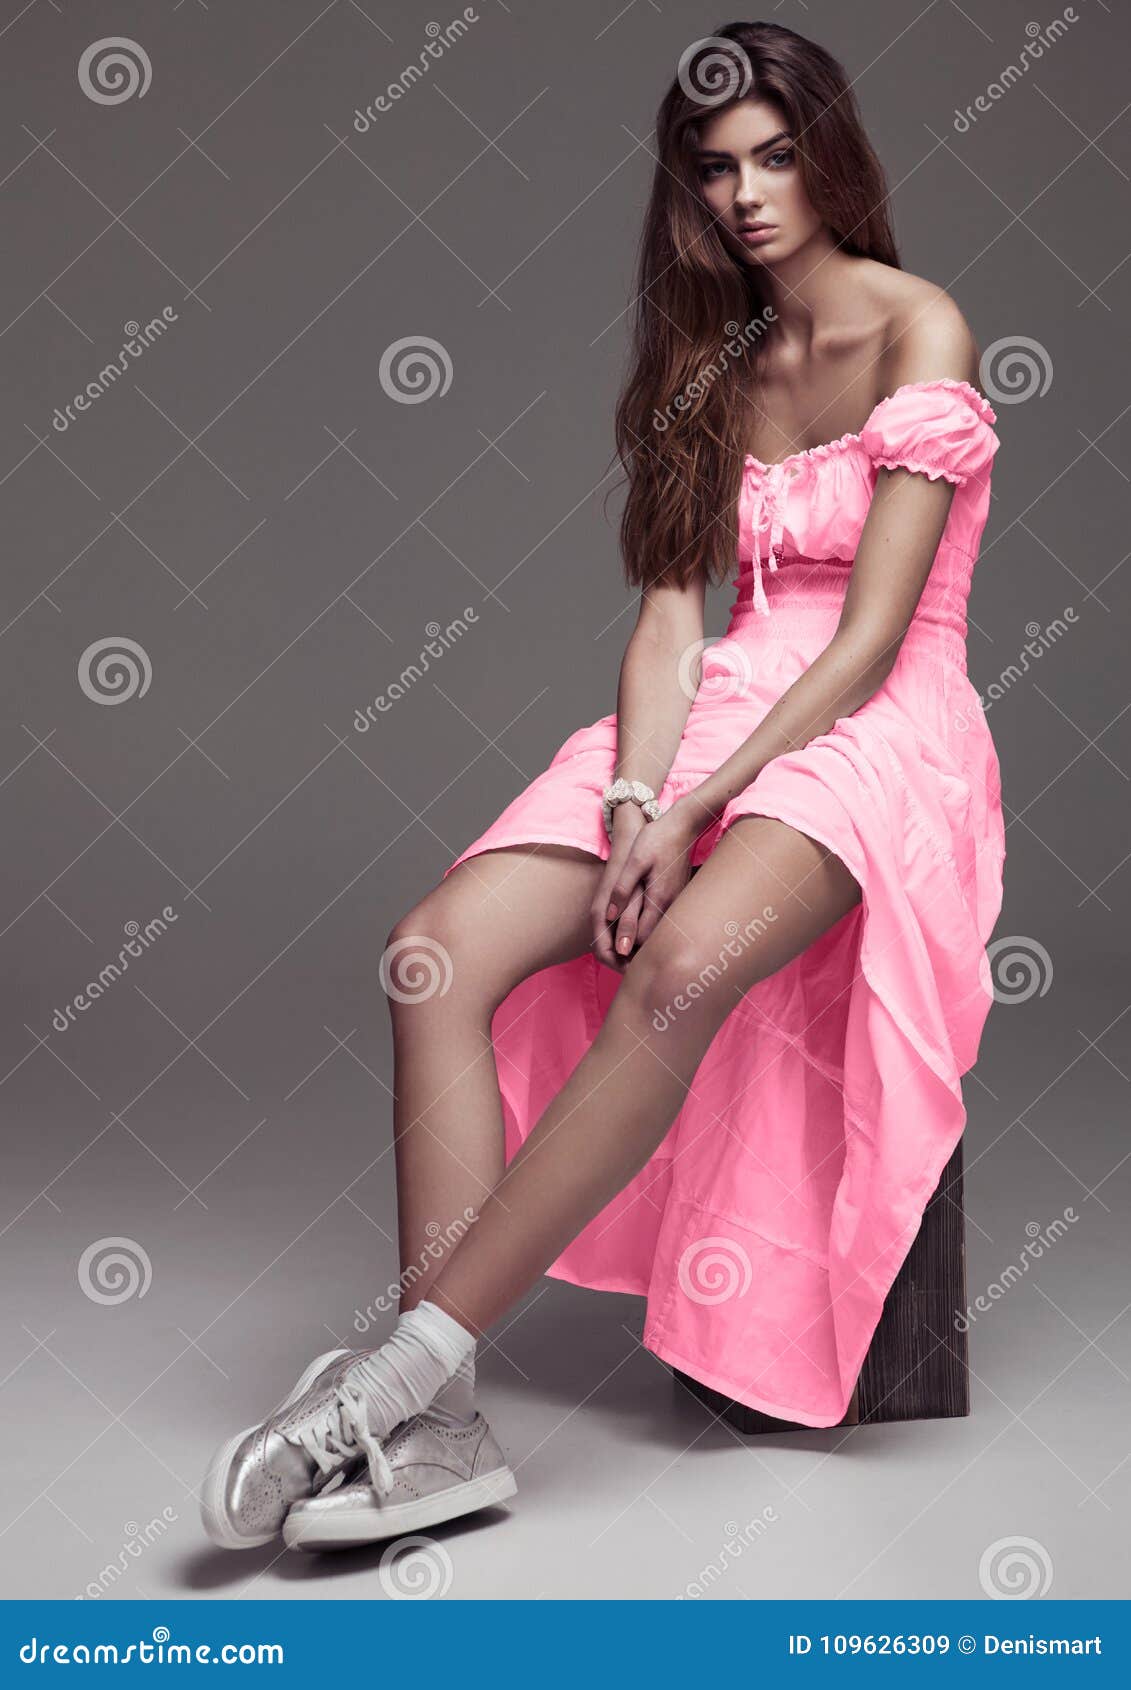 Belle Fille De Mode De Jeune Fille Dans La Robe Rose Image stock - Image du  modèle, noir: 109626309